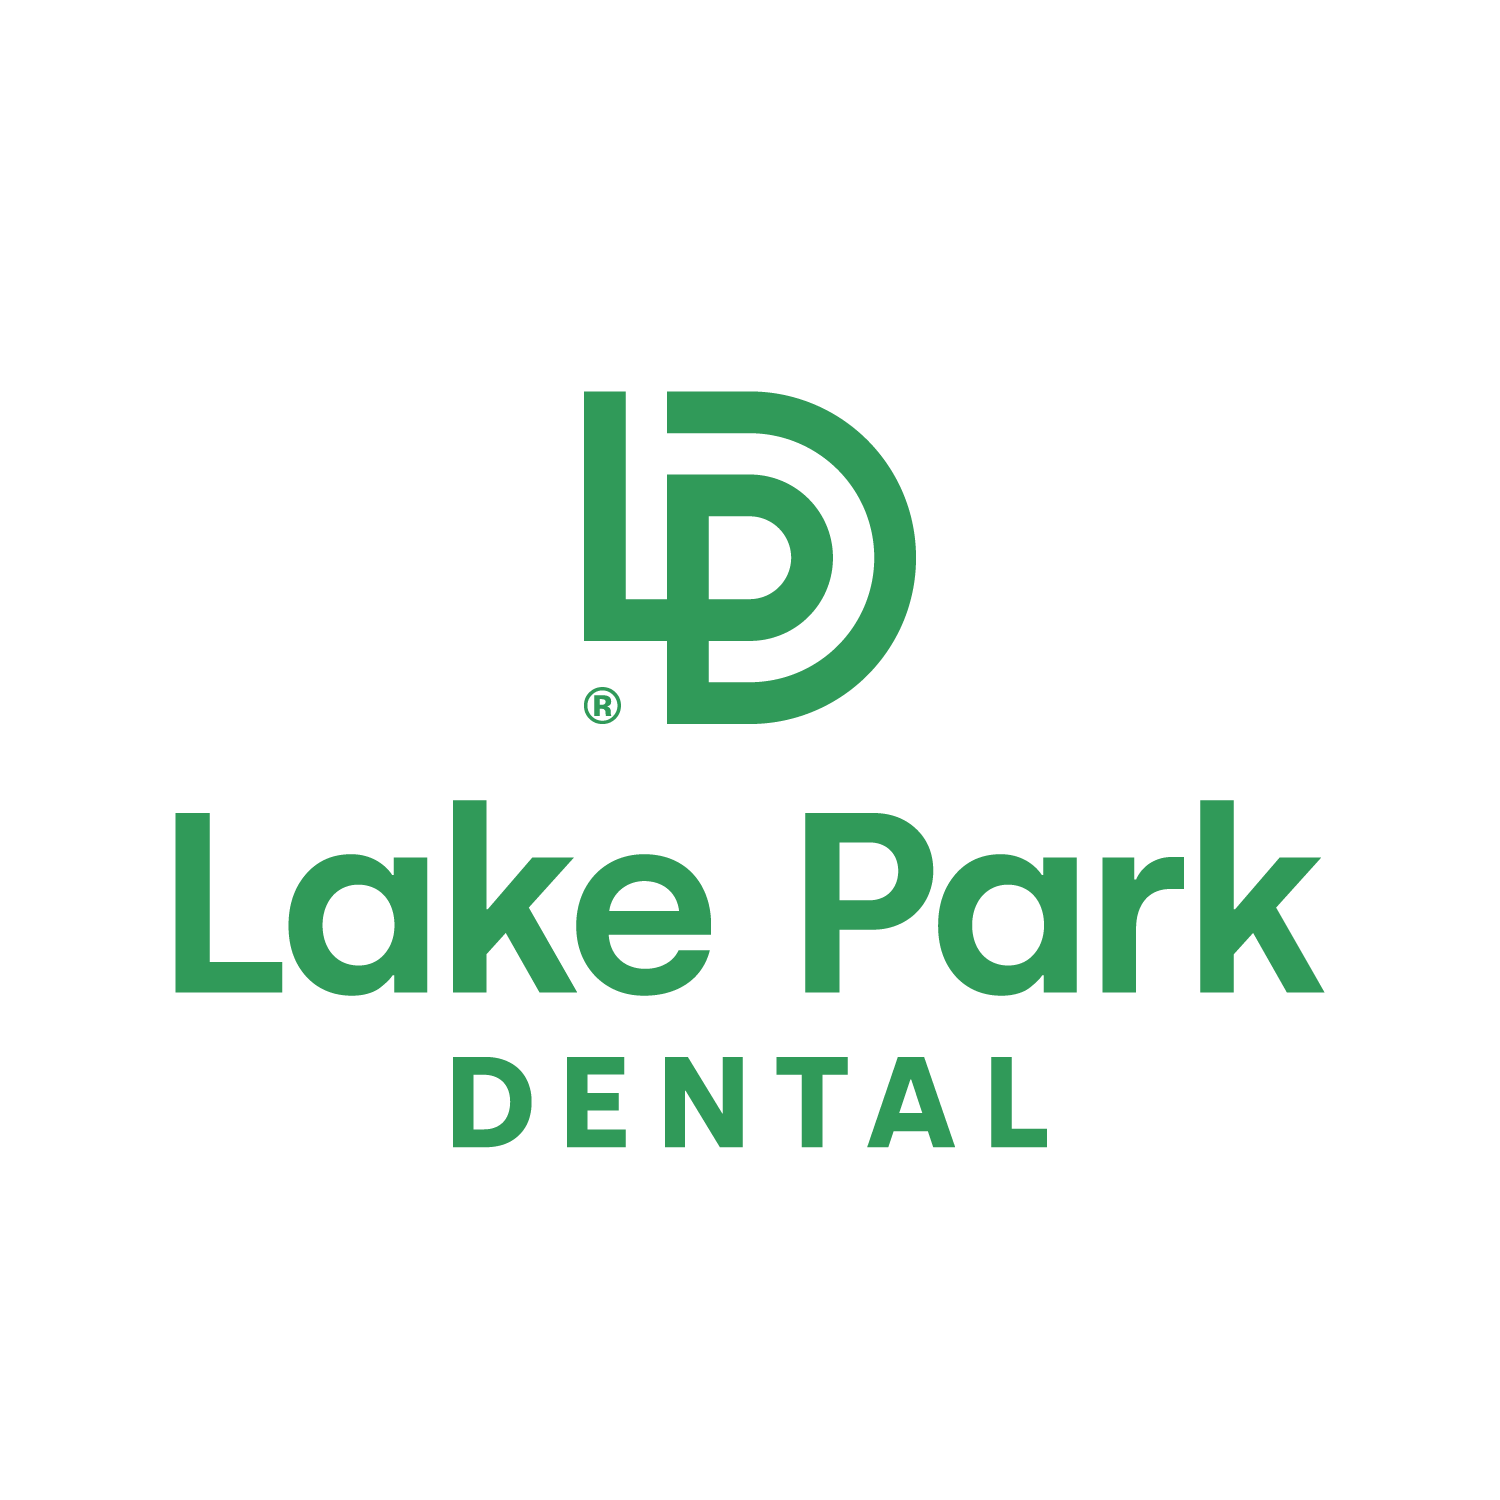 Lake Park Dental - Milwaukee, WI 53211 - (414)963-9440 | ShowMeLocal.com